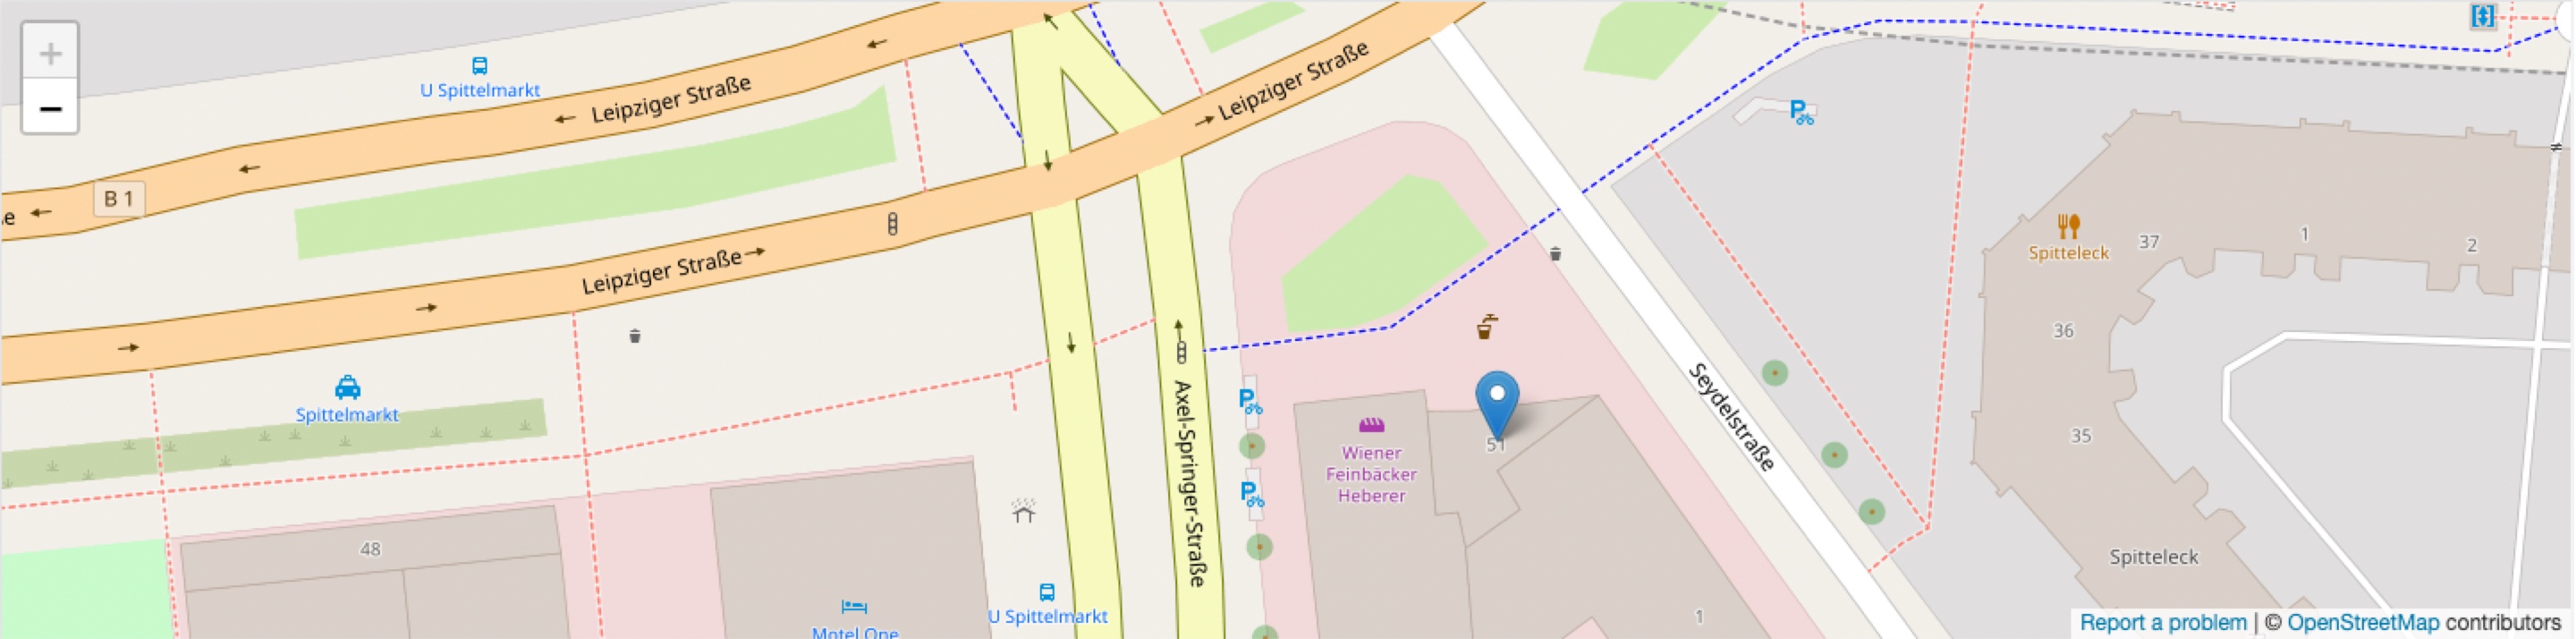 Kartenansicht Standort S Rating und Risikosysteme GmbH, Leipziger Straße 51, 10117 Berlin - OpenStreetMap